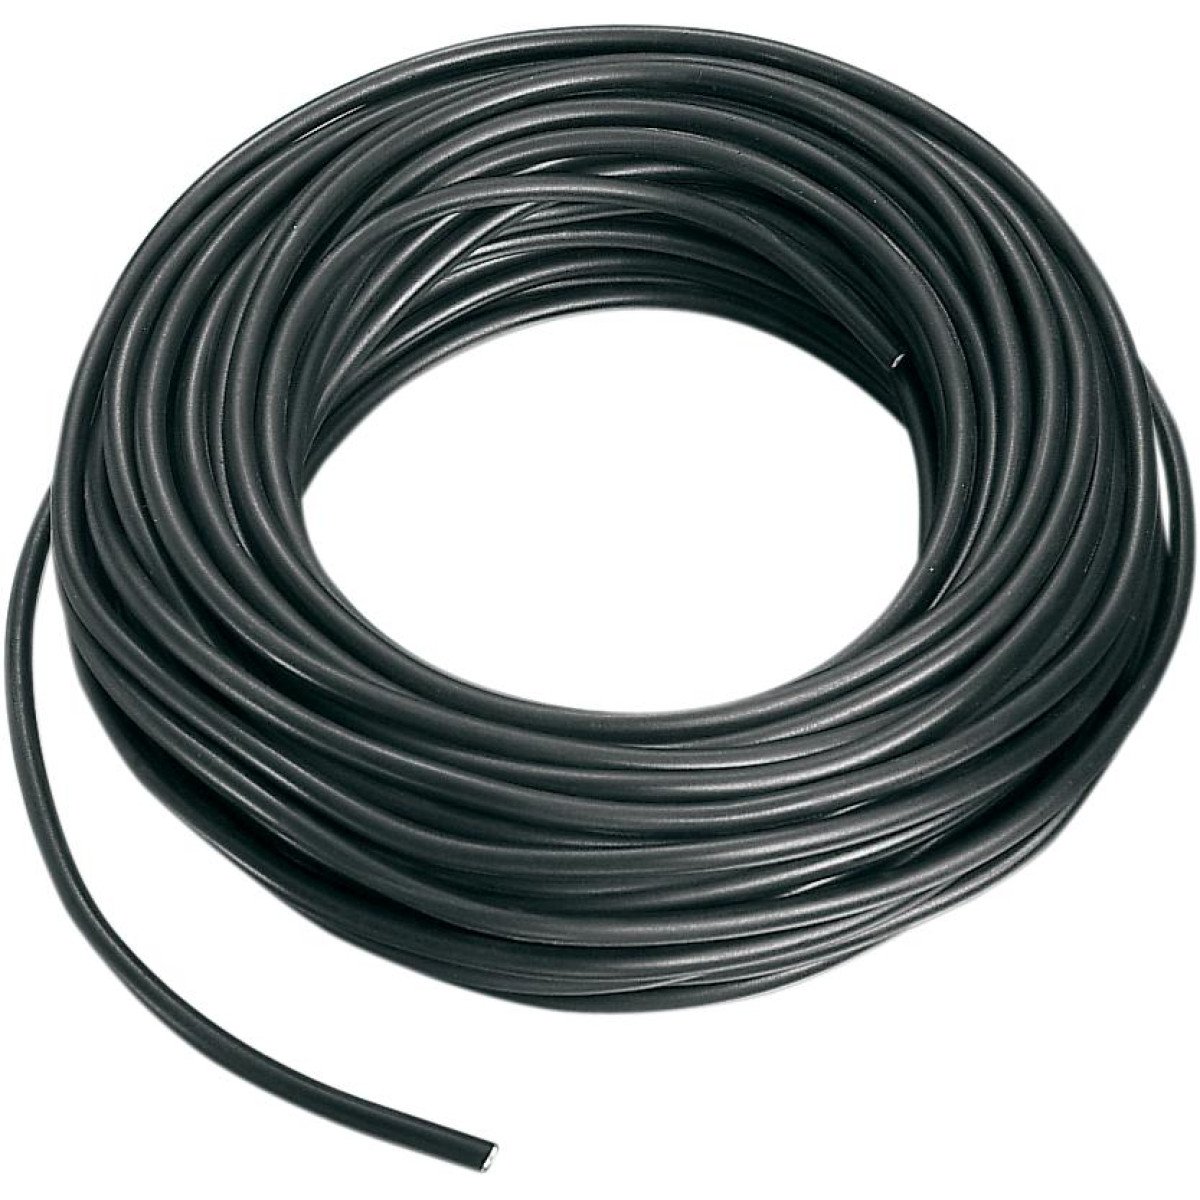 Parts Unlimited Câble de Bougie  30.5 m, Black